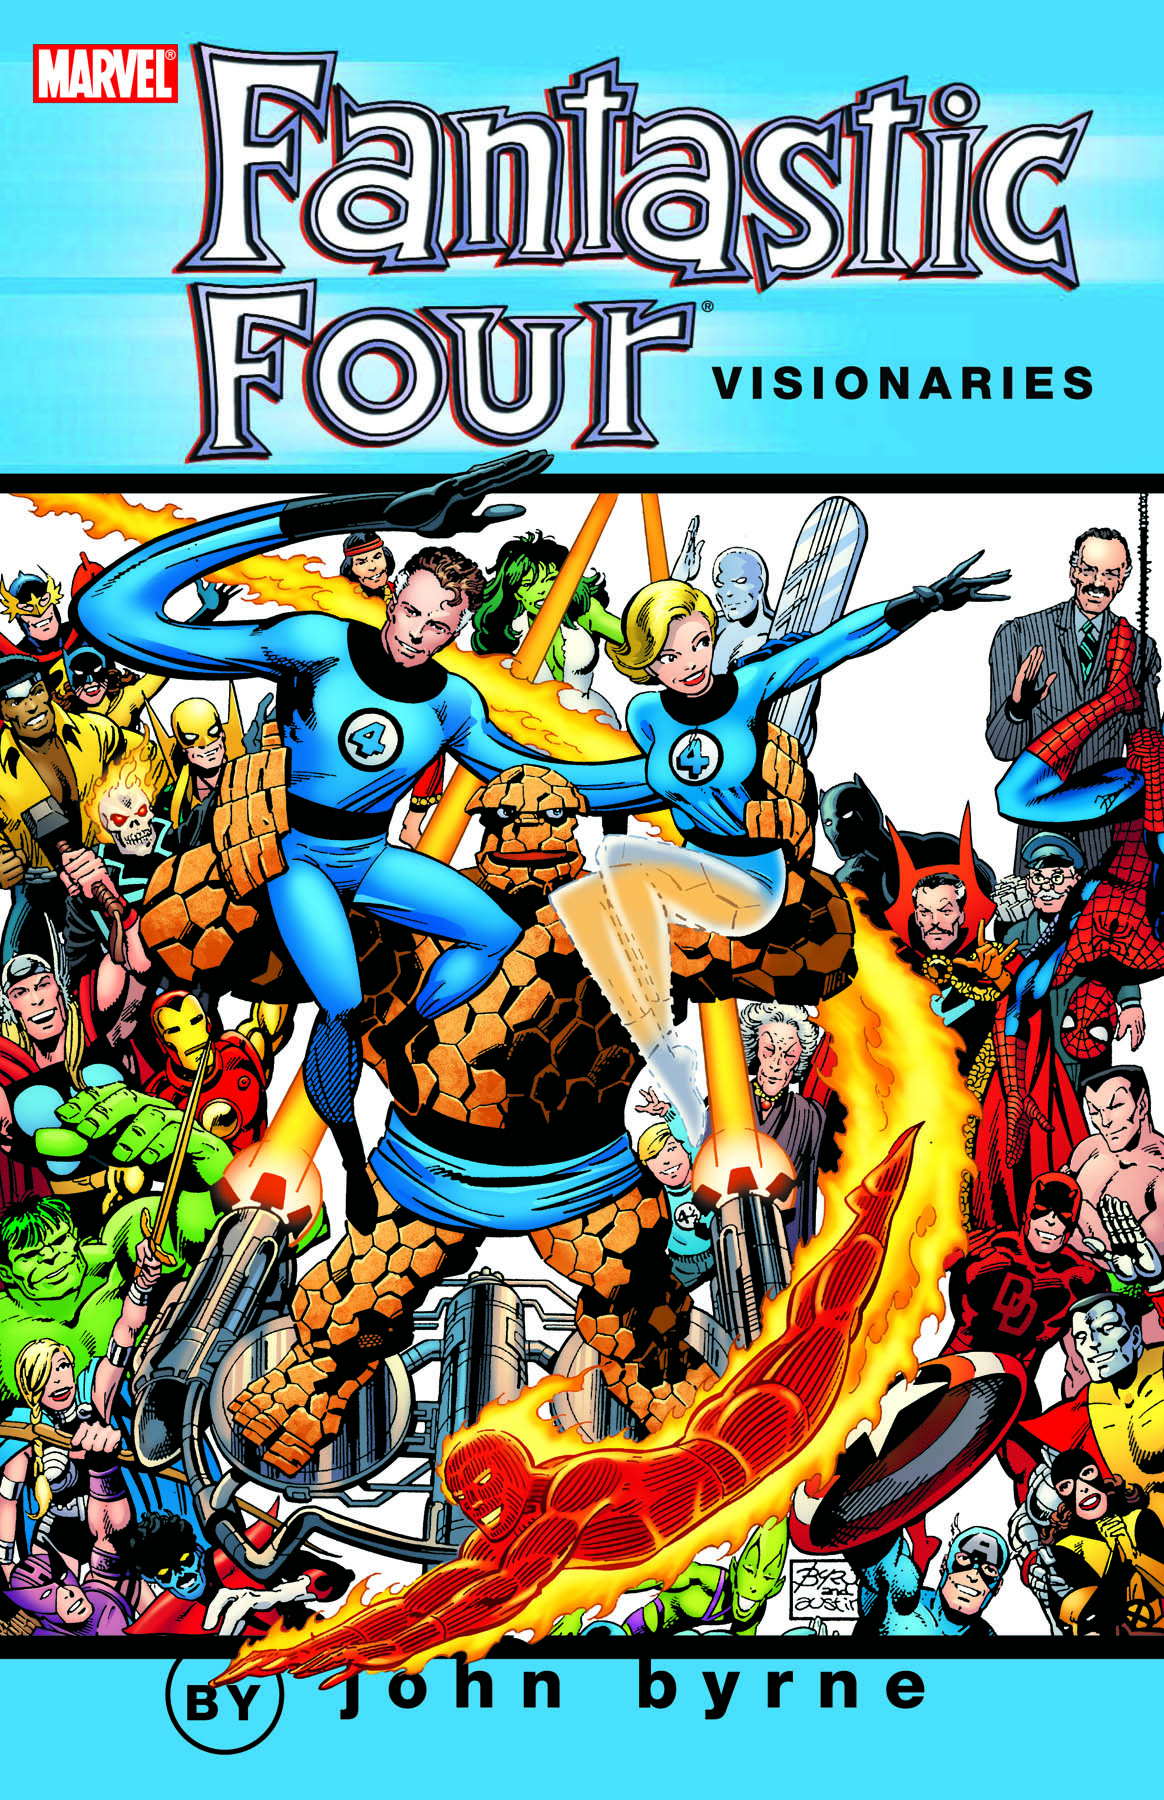 Fantastic Four by John Byrne Omnibus Vol. 1 (Trade Paperback)